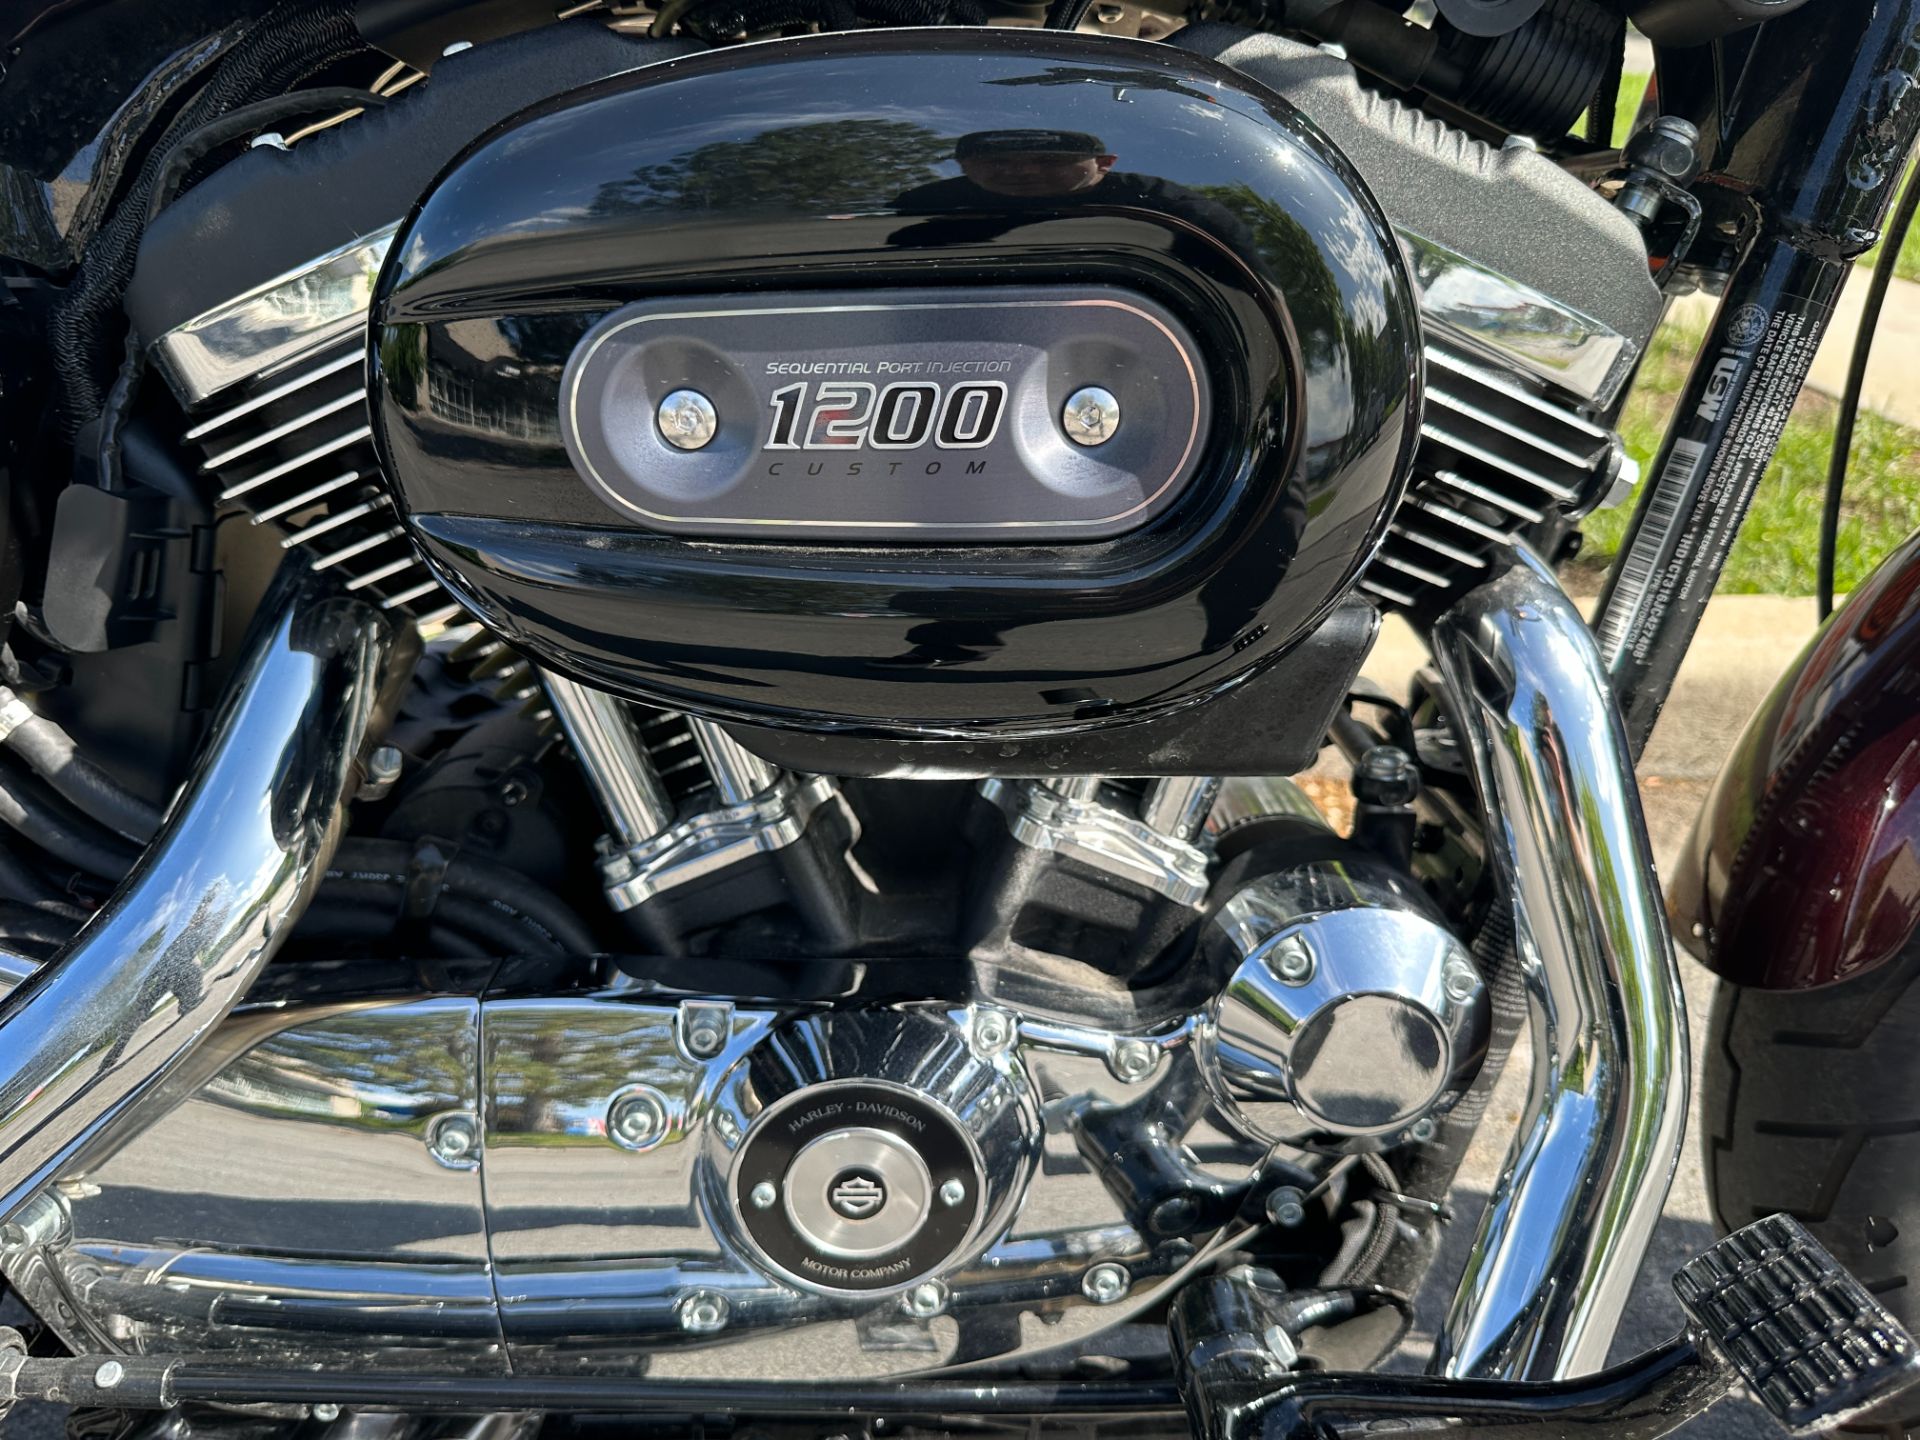 2018 Harley-Davidson 1200 Custom in Sandy, Utah - Photo 4